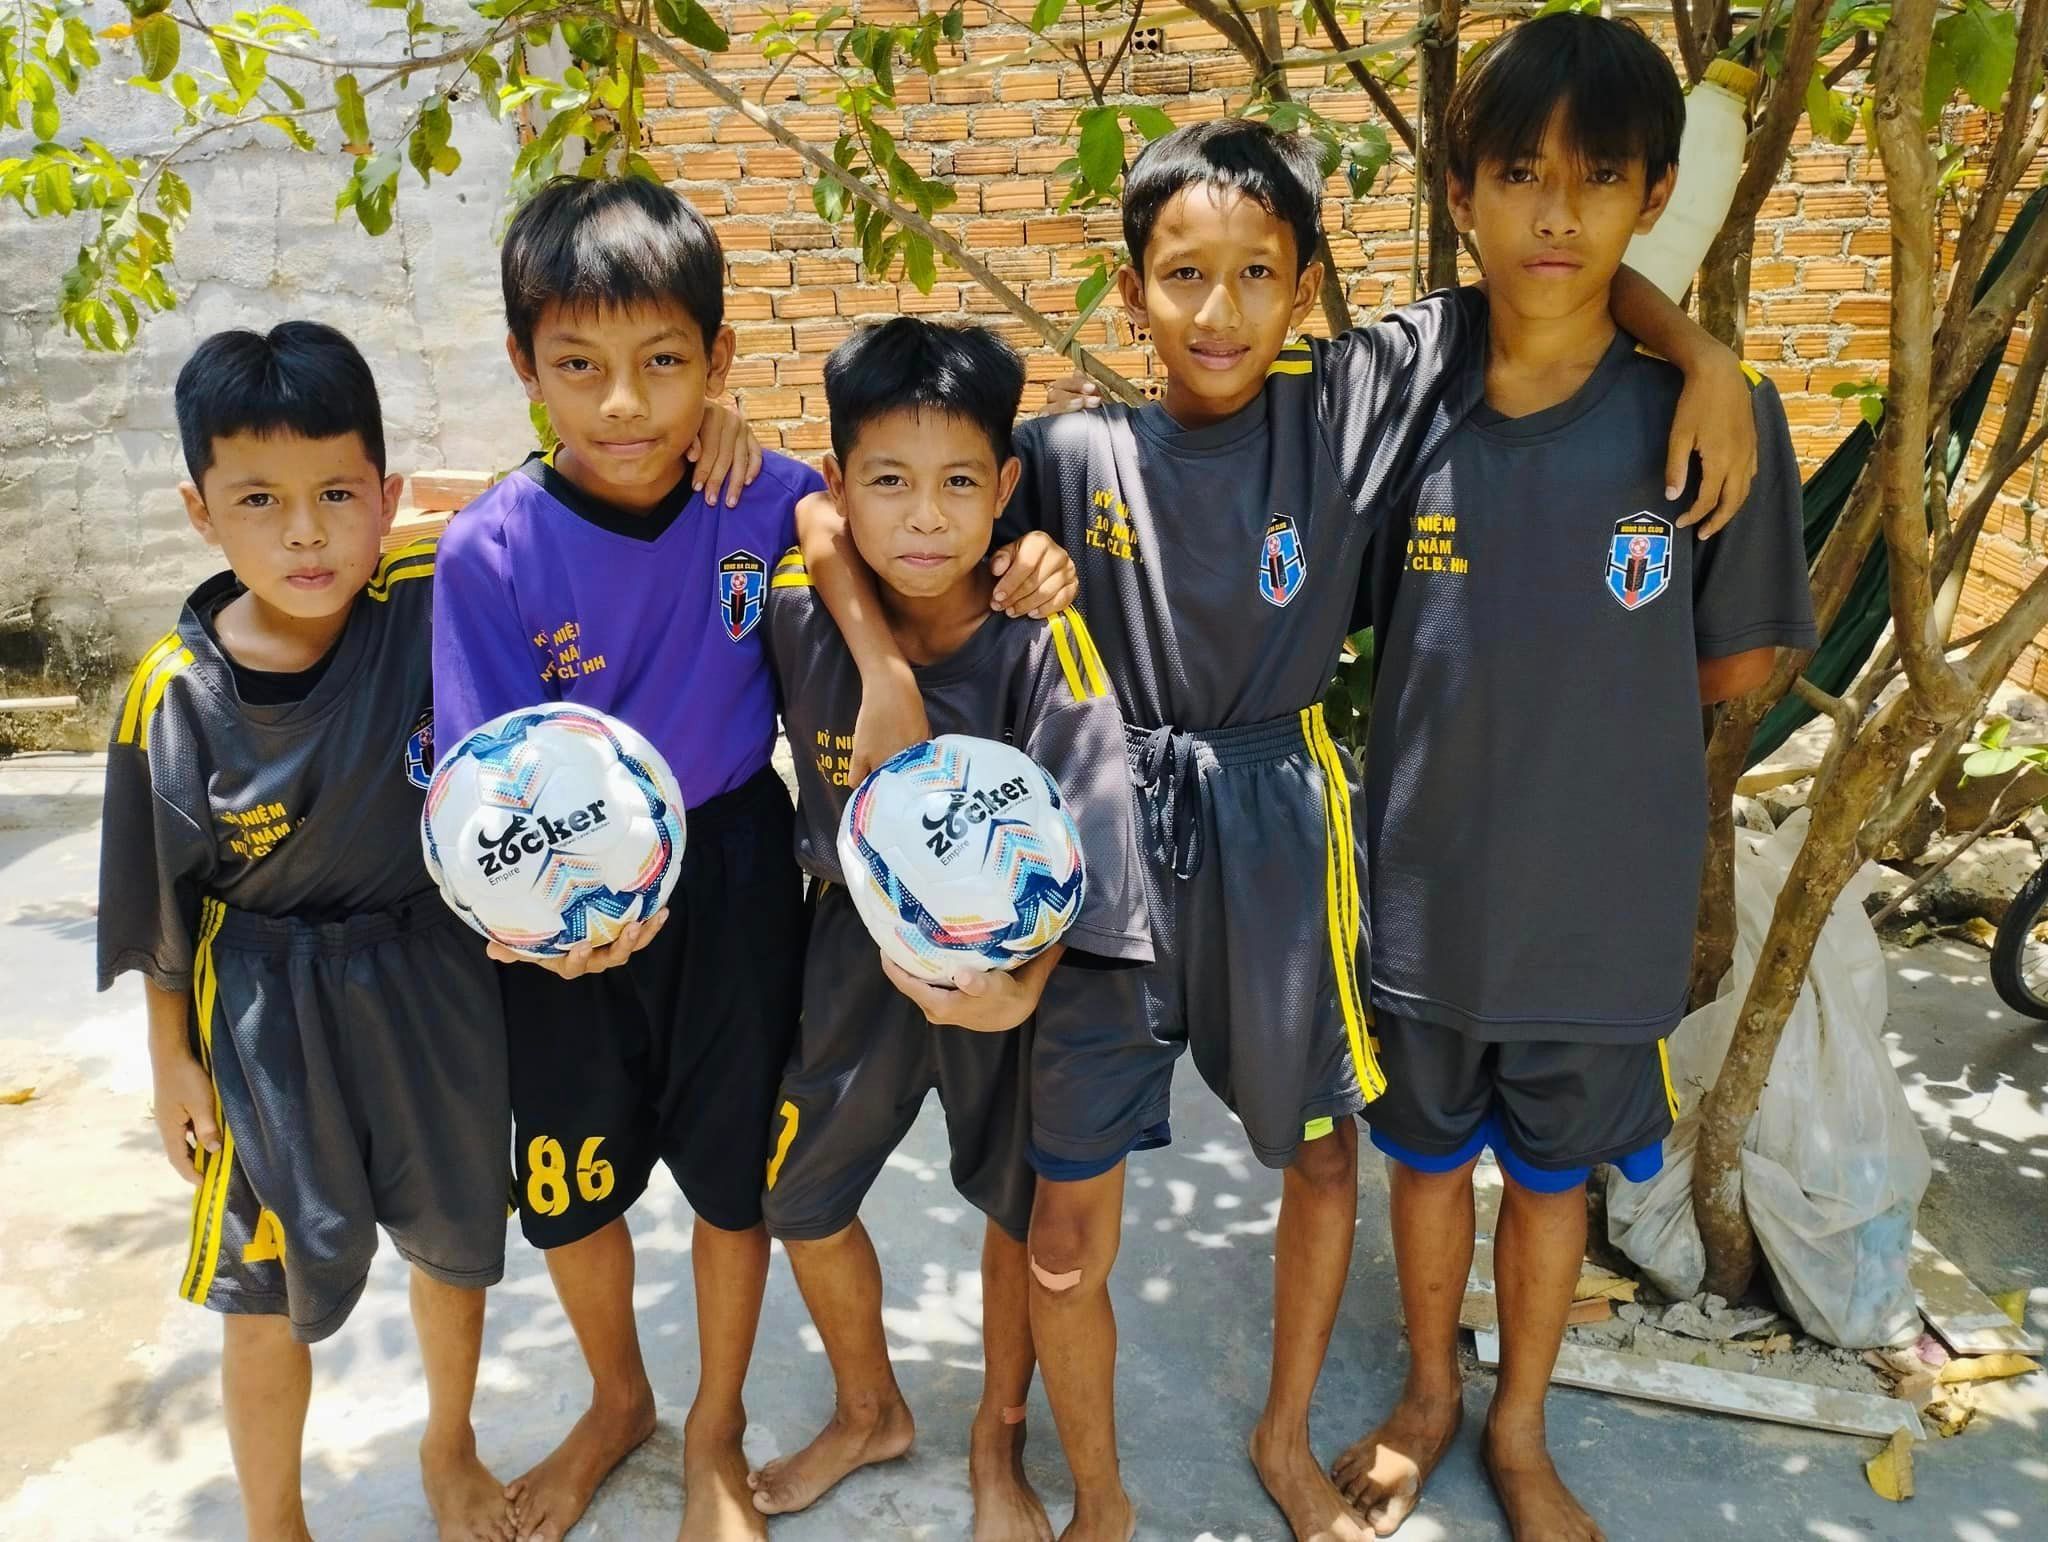 Neymarsport trao tặng quả bóng đá zocker cho các bạn nhỏ làng Chăm Tường Loan - 1